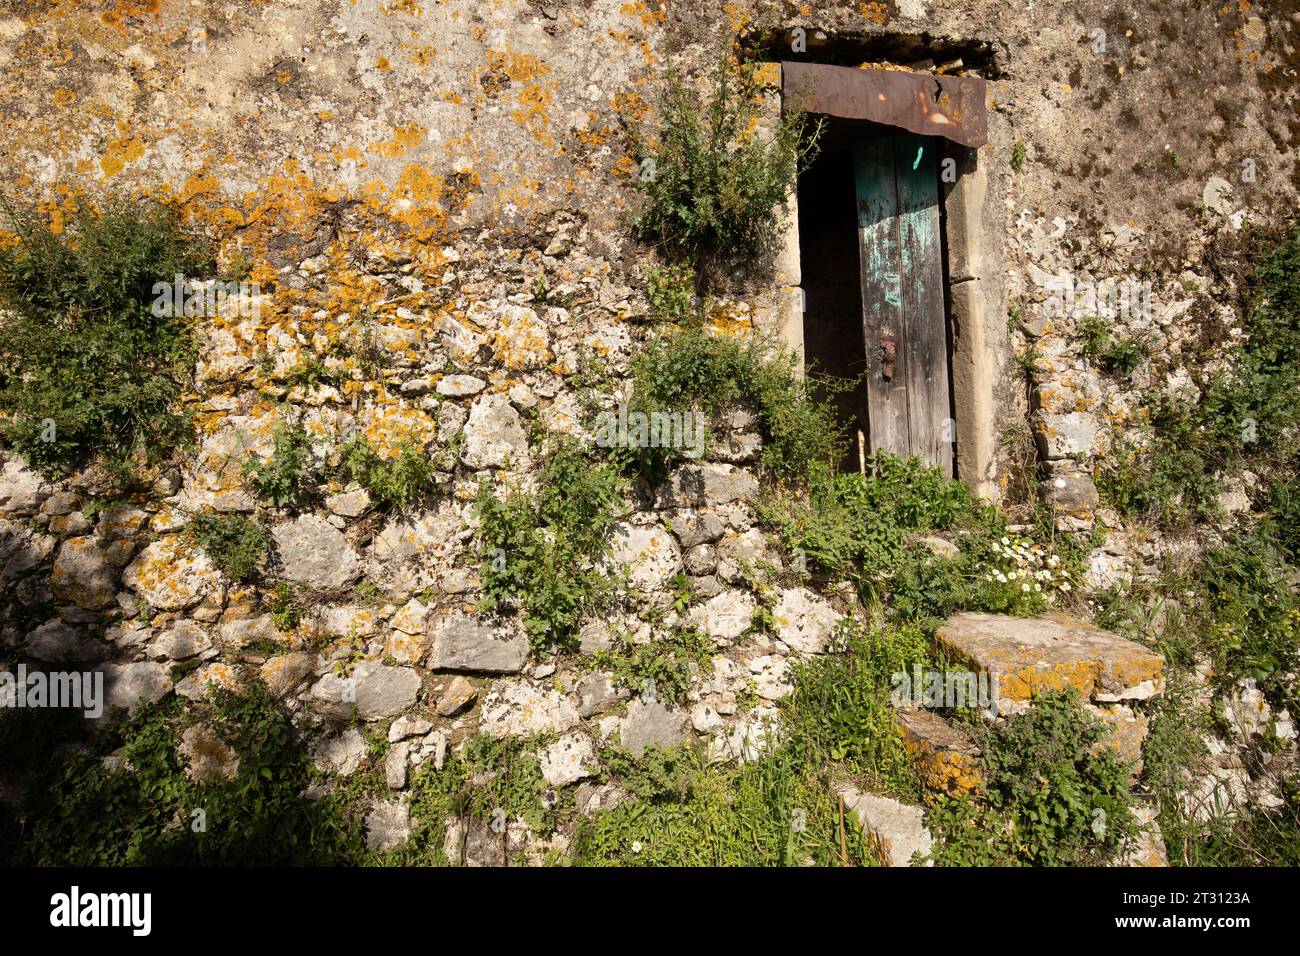 Ein verlassenes Haus in einem ländlichen Teil von Korfu, wo die Auswirkungen der ländlichen Verlassenheit offensichtlich sind und Menschen in die Städte ziehen. Die Natur ist der Gewinner. Stockfoto